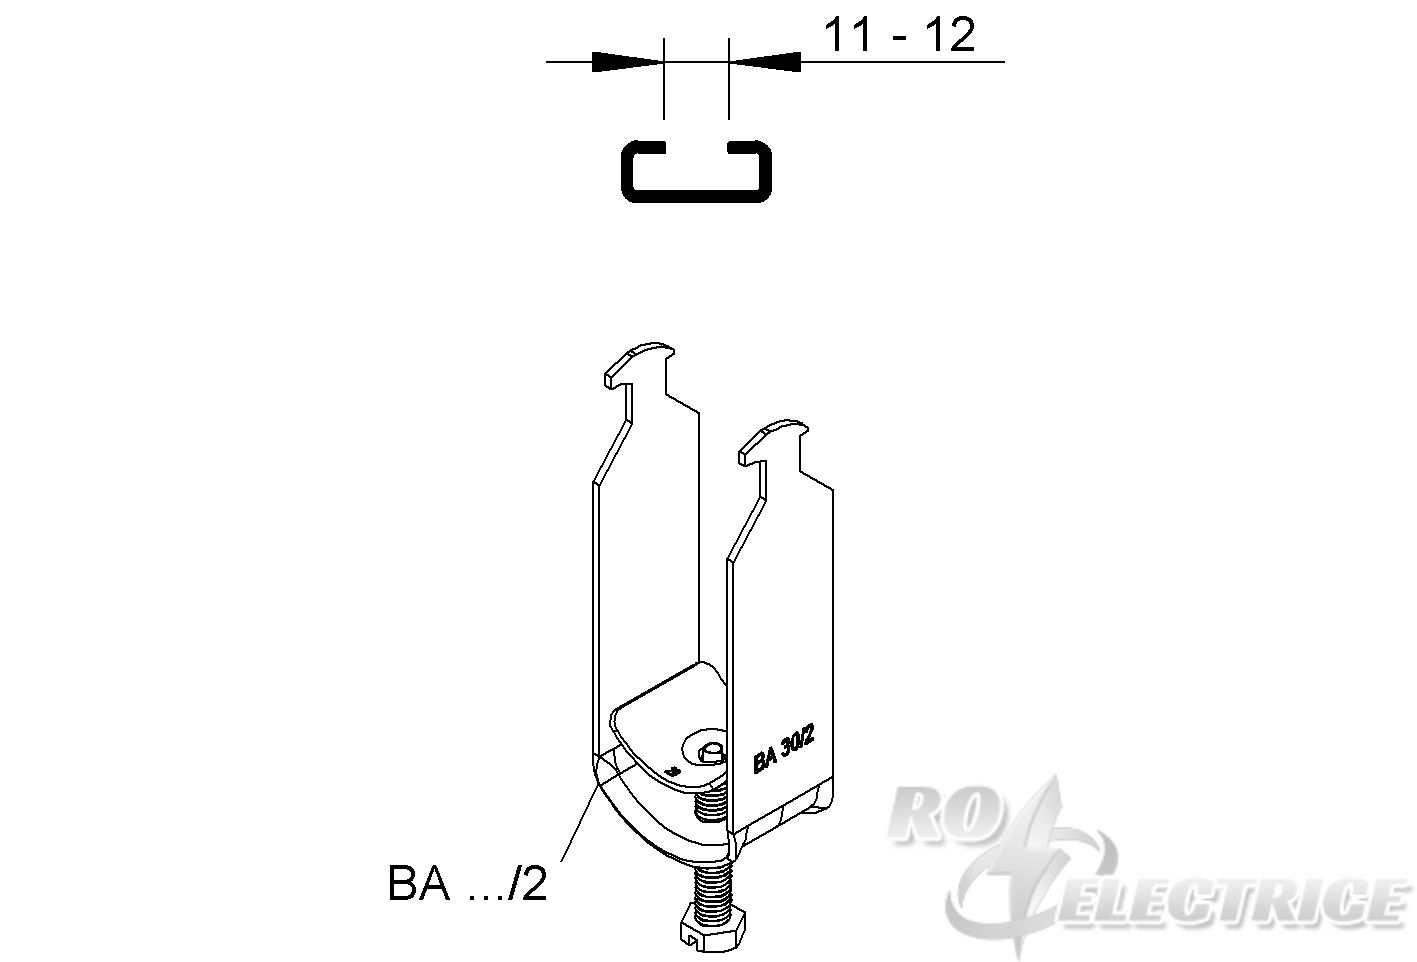 Hammerfuß-Bügelschelle, für 2 Kabel, Ø 10-12 mm, Schlitzweite 11-12 mm, Stahl, feuerverzinkt DIN EN ISO 1461, mit Stahld